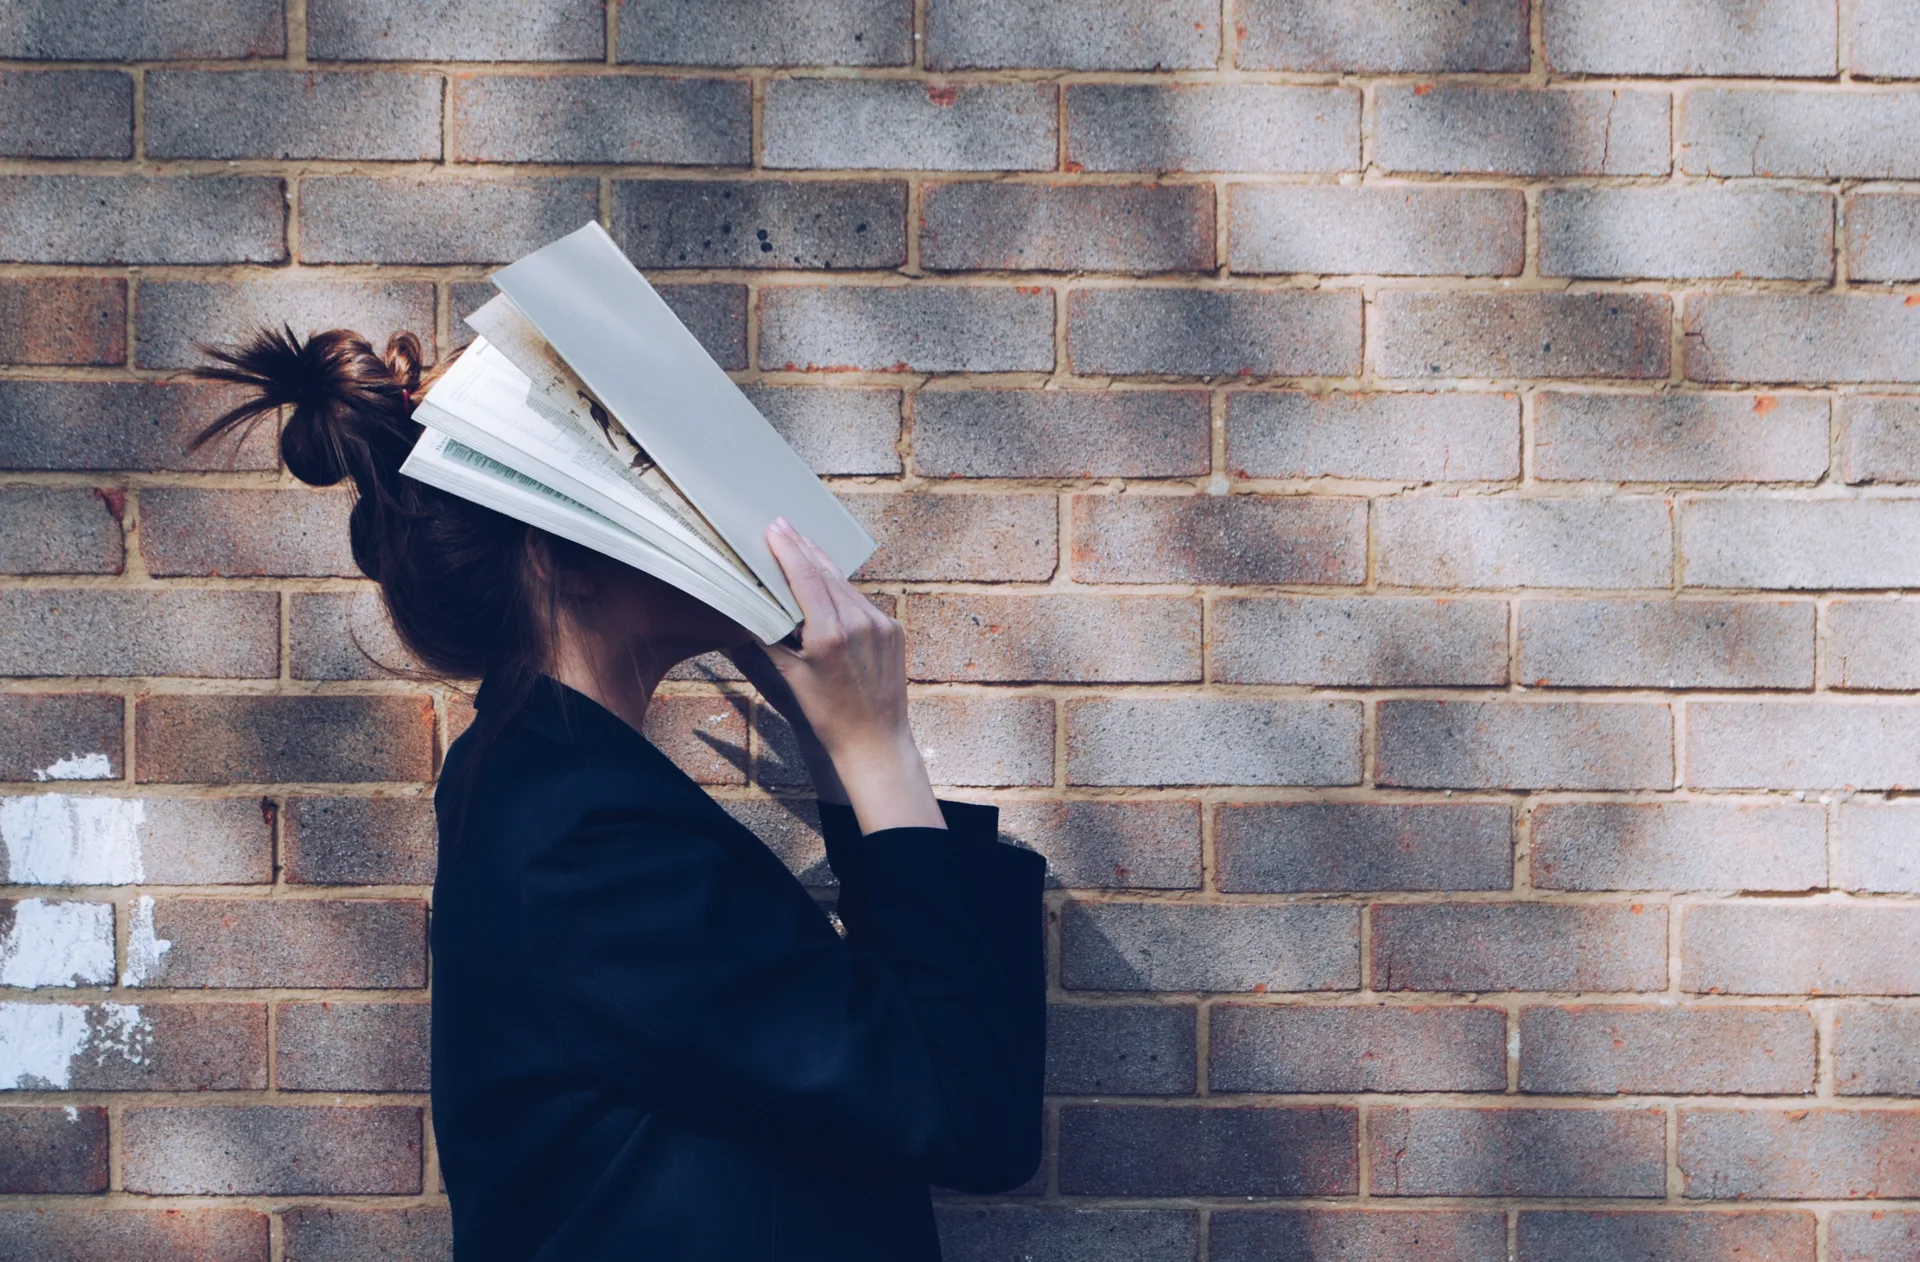 Schulstress – Eine Person hält ein aufgeschlagenes Buch vor ihr Gesicht, das sie teilweise verdeckt, vor einer Backsteinmauer, was auf das Konzept der Wissensvertiefung oder die Vermeidung von Ablenkungen hindeuten könnte.